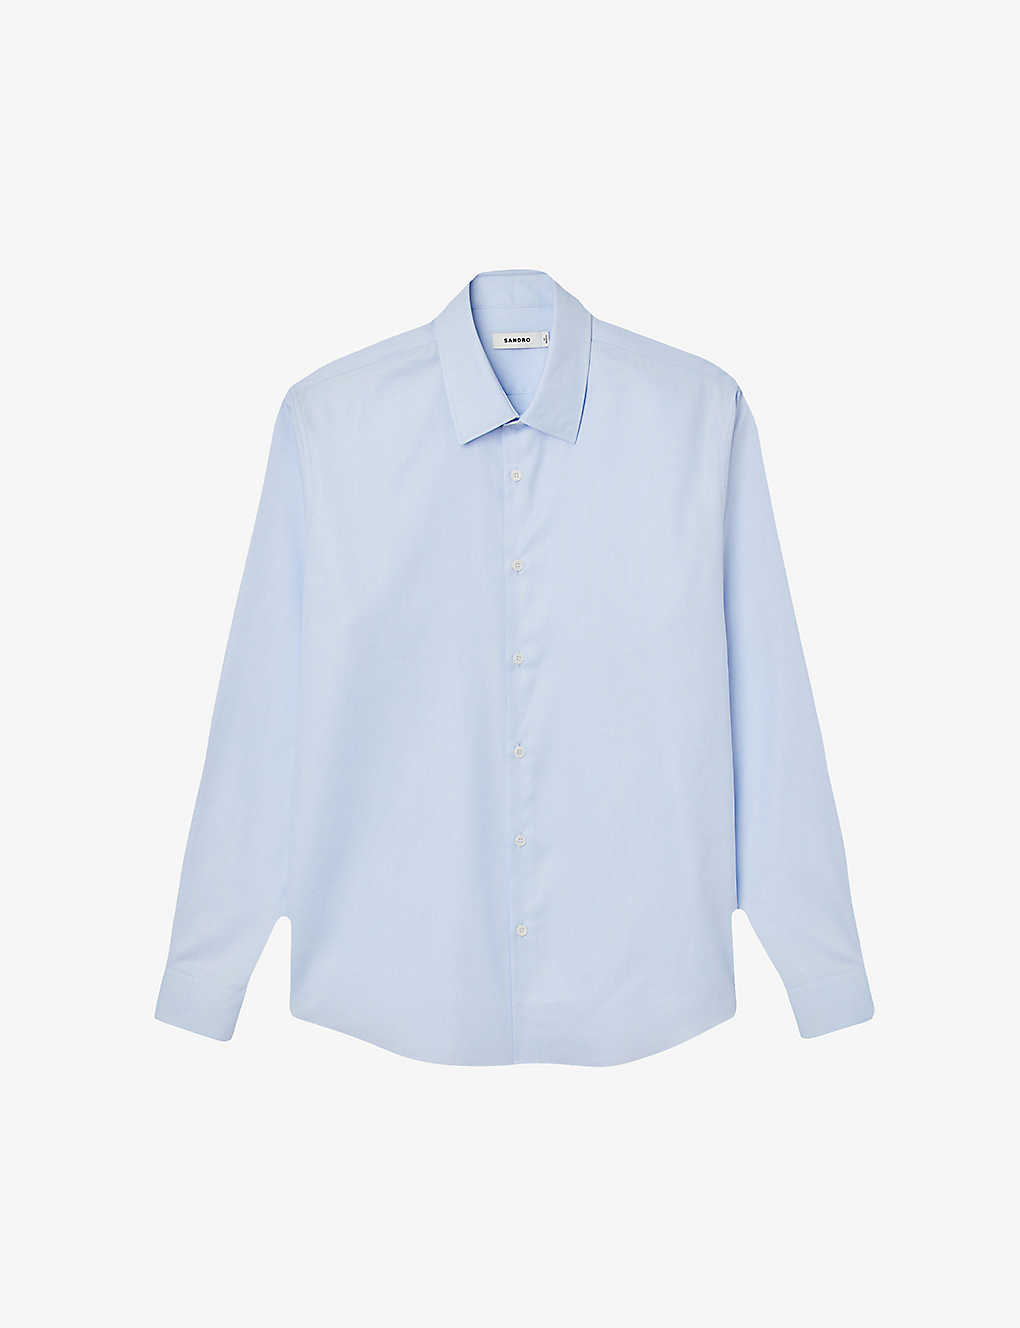 Sandro Mens Bleus Oxford Long-sleeved Cotton Shirt In Sky Blue